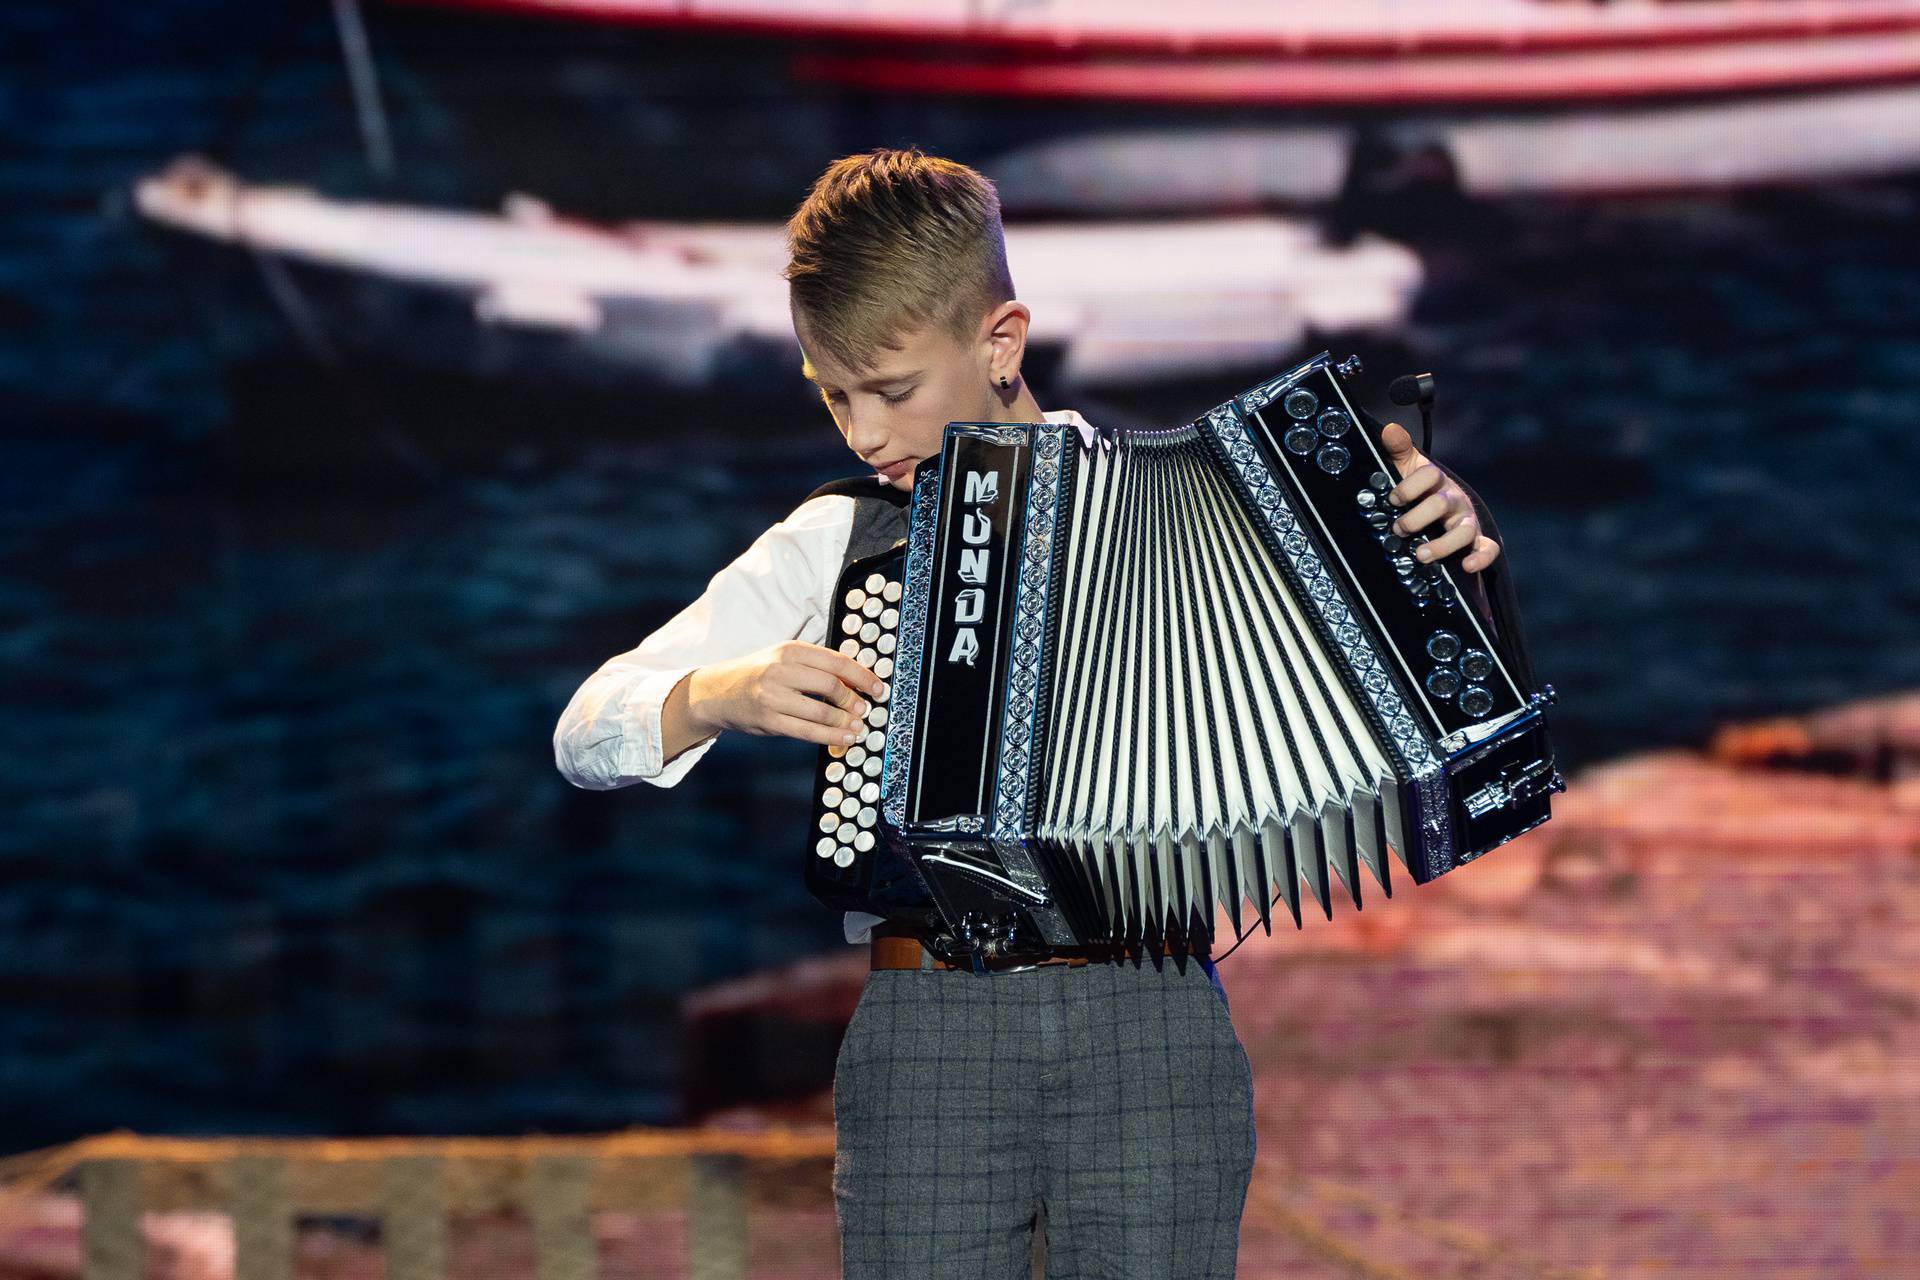 Harmonikaš Matej (9) o finalu 'Supertalenta': Nisam očekivao prolaz, od audicije više vježbam